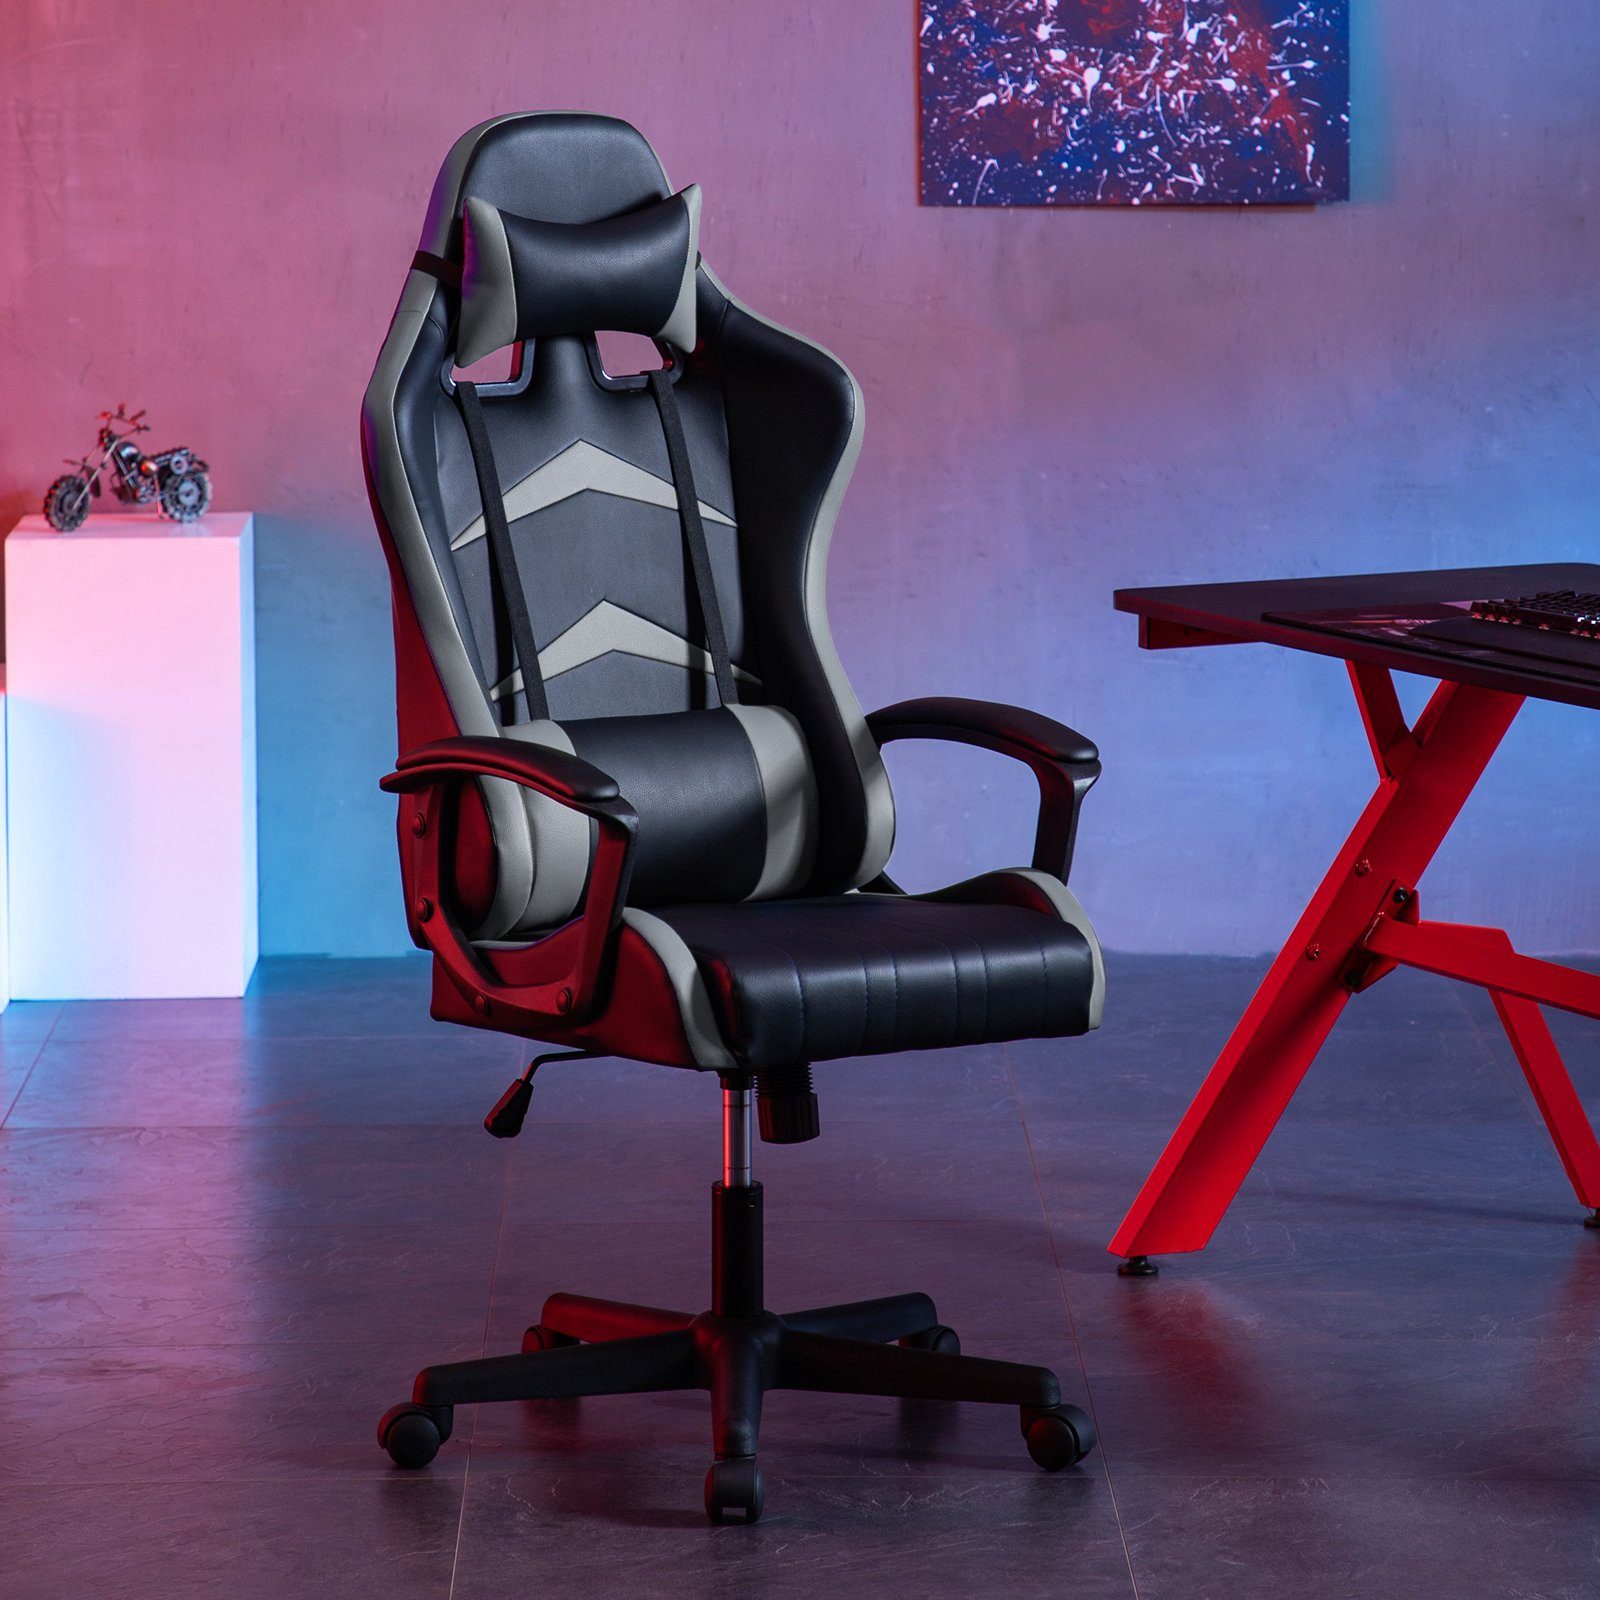 Intimate WM Heart Gaming-Stuhl Verstellbarer grau Rückenlehne hoher mit Ergonomischer Schreibtischstuhl